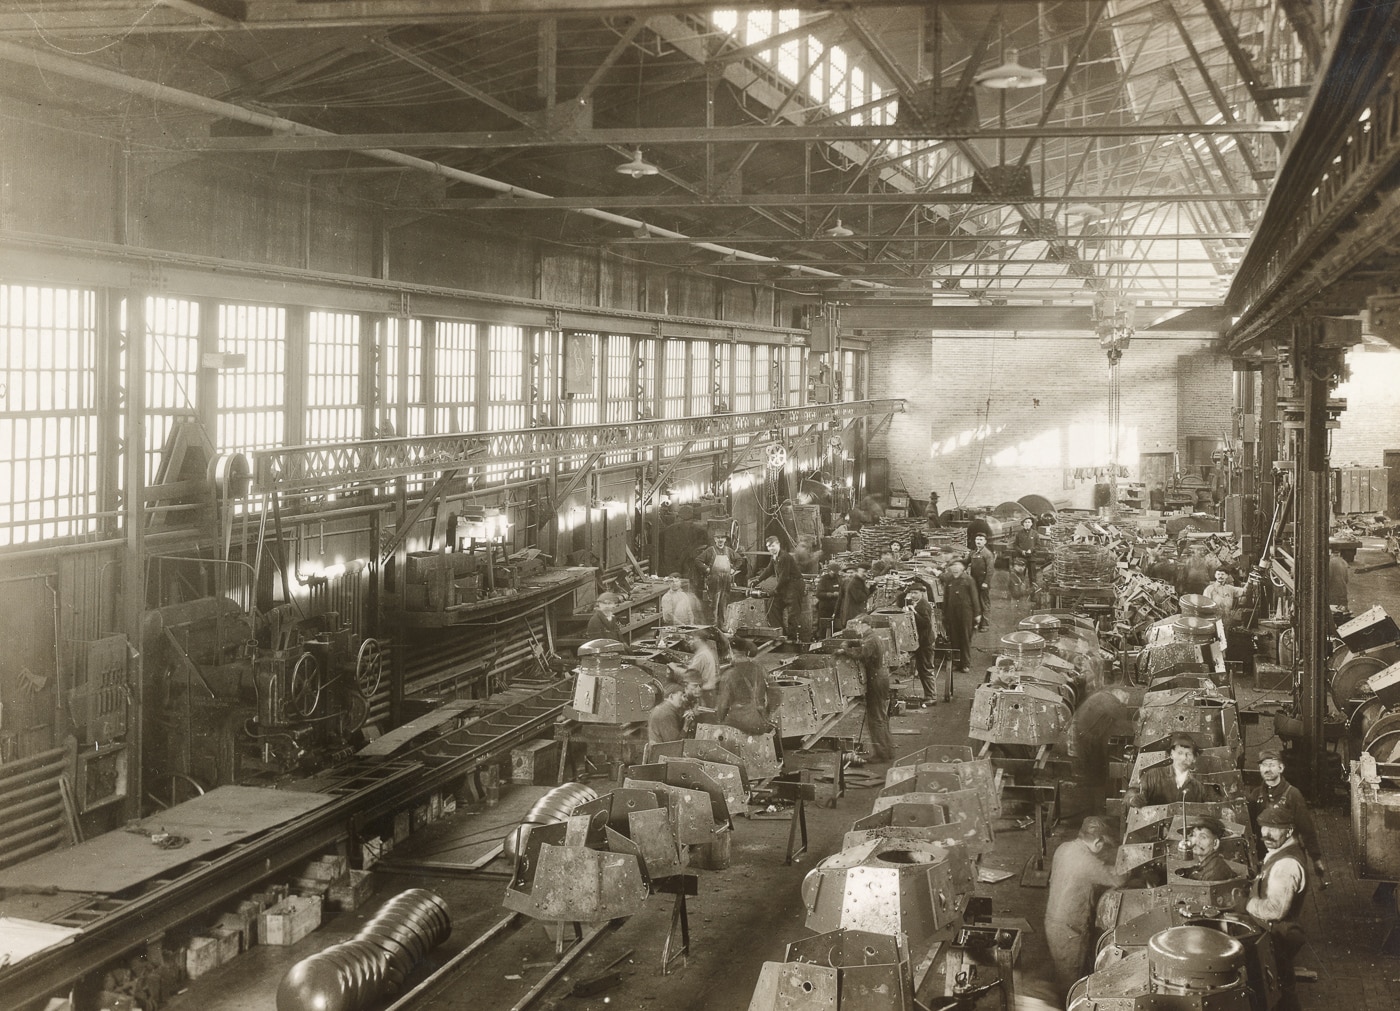 M1917 tank manufacturing at Van Dorn Iron Works